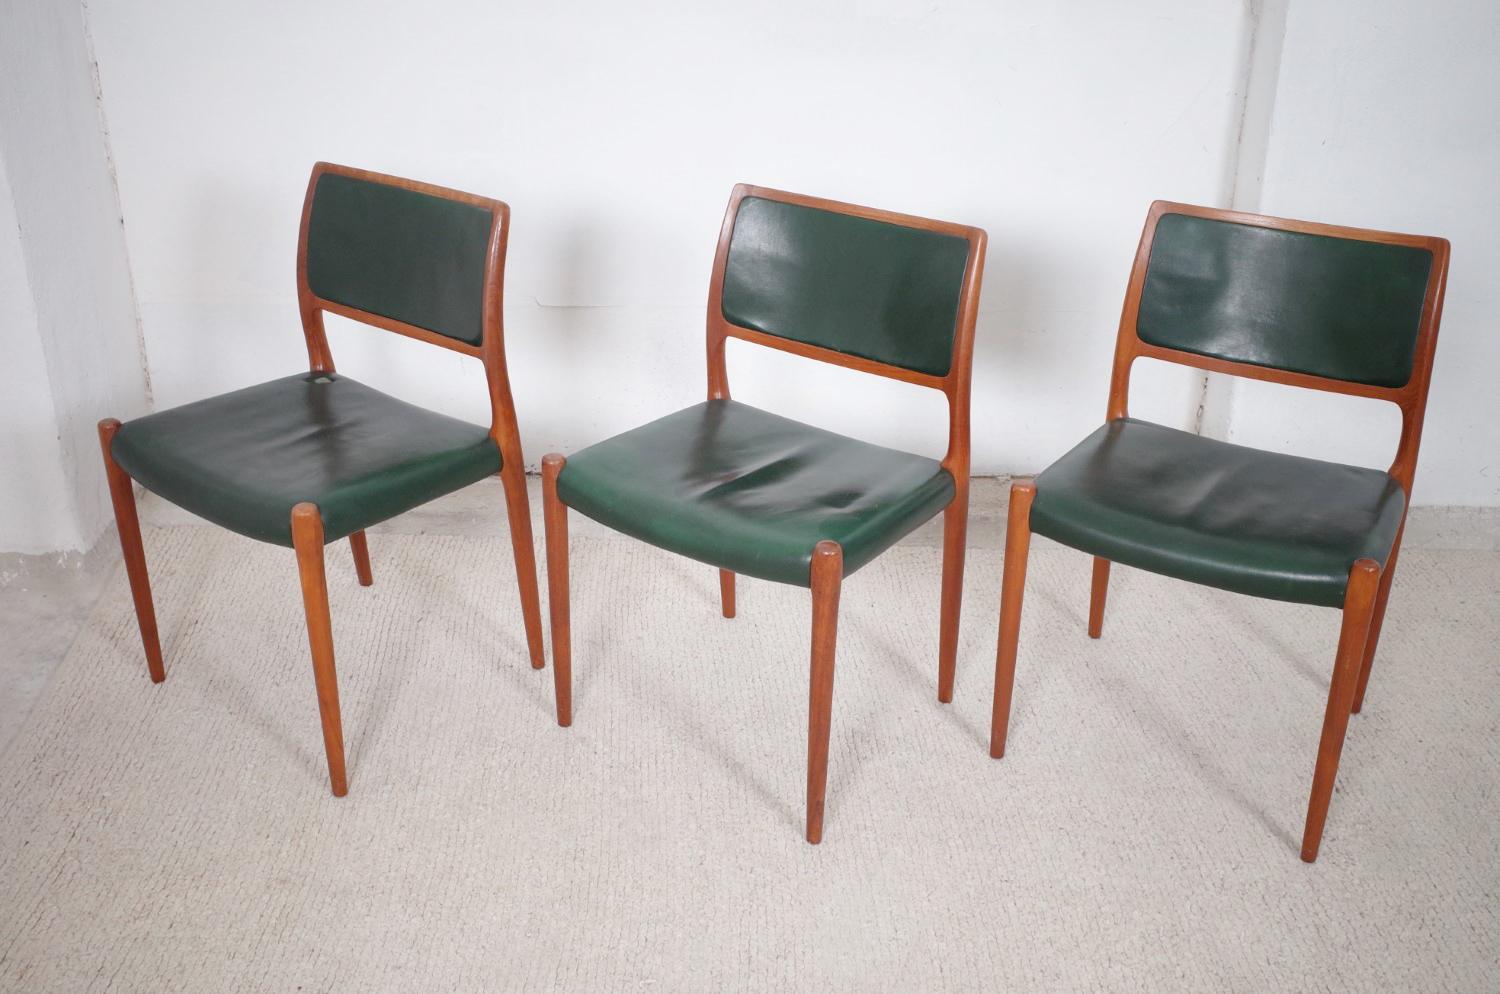 Mid-Century Modern Dänische Modell 80 Esszimmerstühle aus Teak von Niels O. Møller 1960er Jahre For Sale